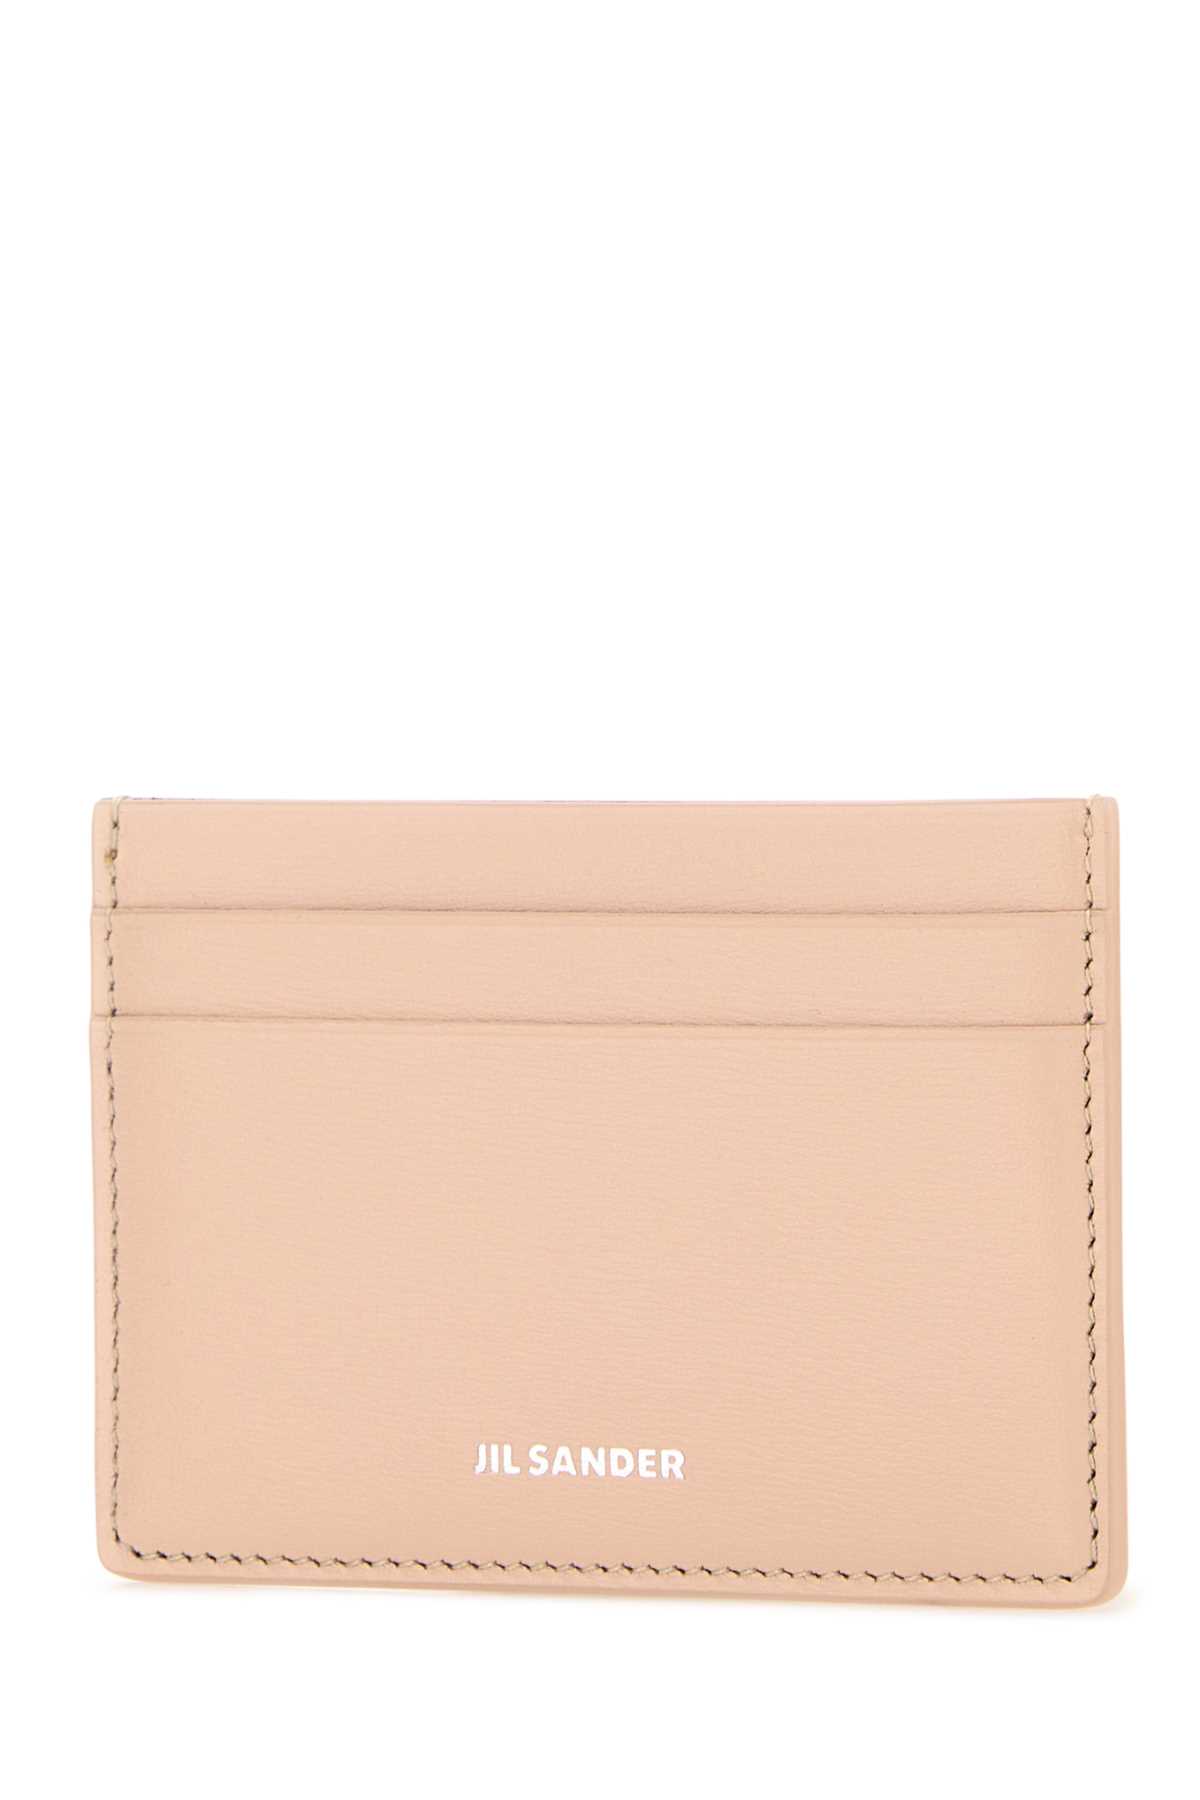 Jil Sander Pastel Pink Leather Card Holder In 679